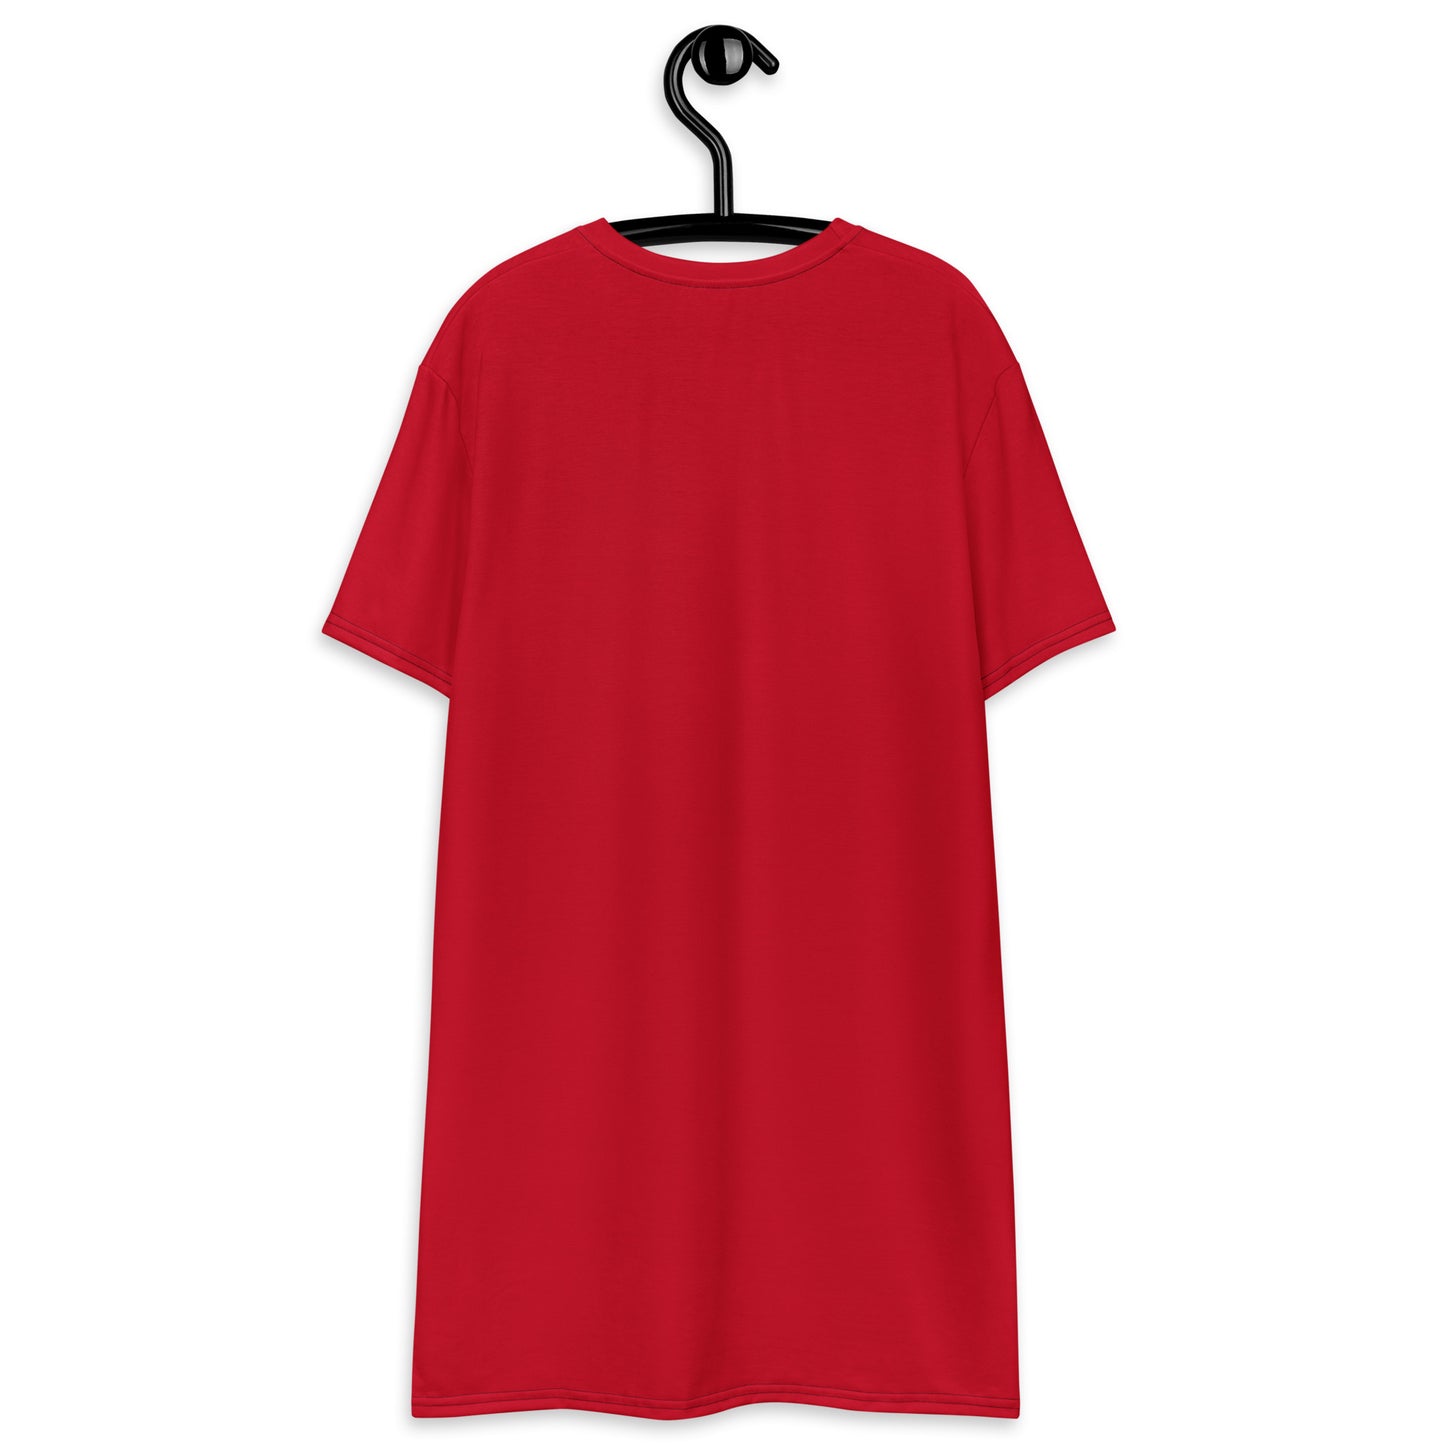 Women's Red Dress T-shirt, Cotton, Short sleeve, Peaceful logo, Sz 2XS-3XL